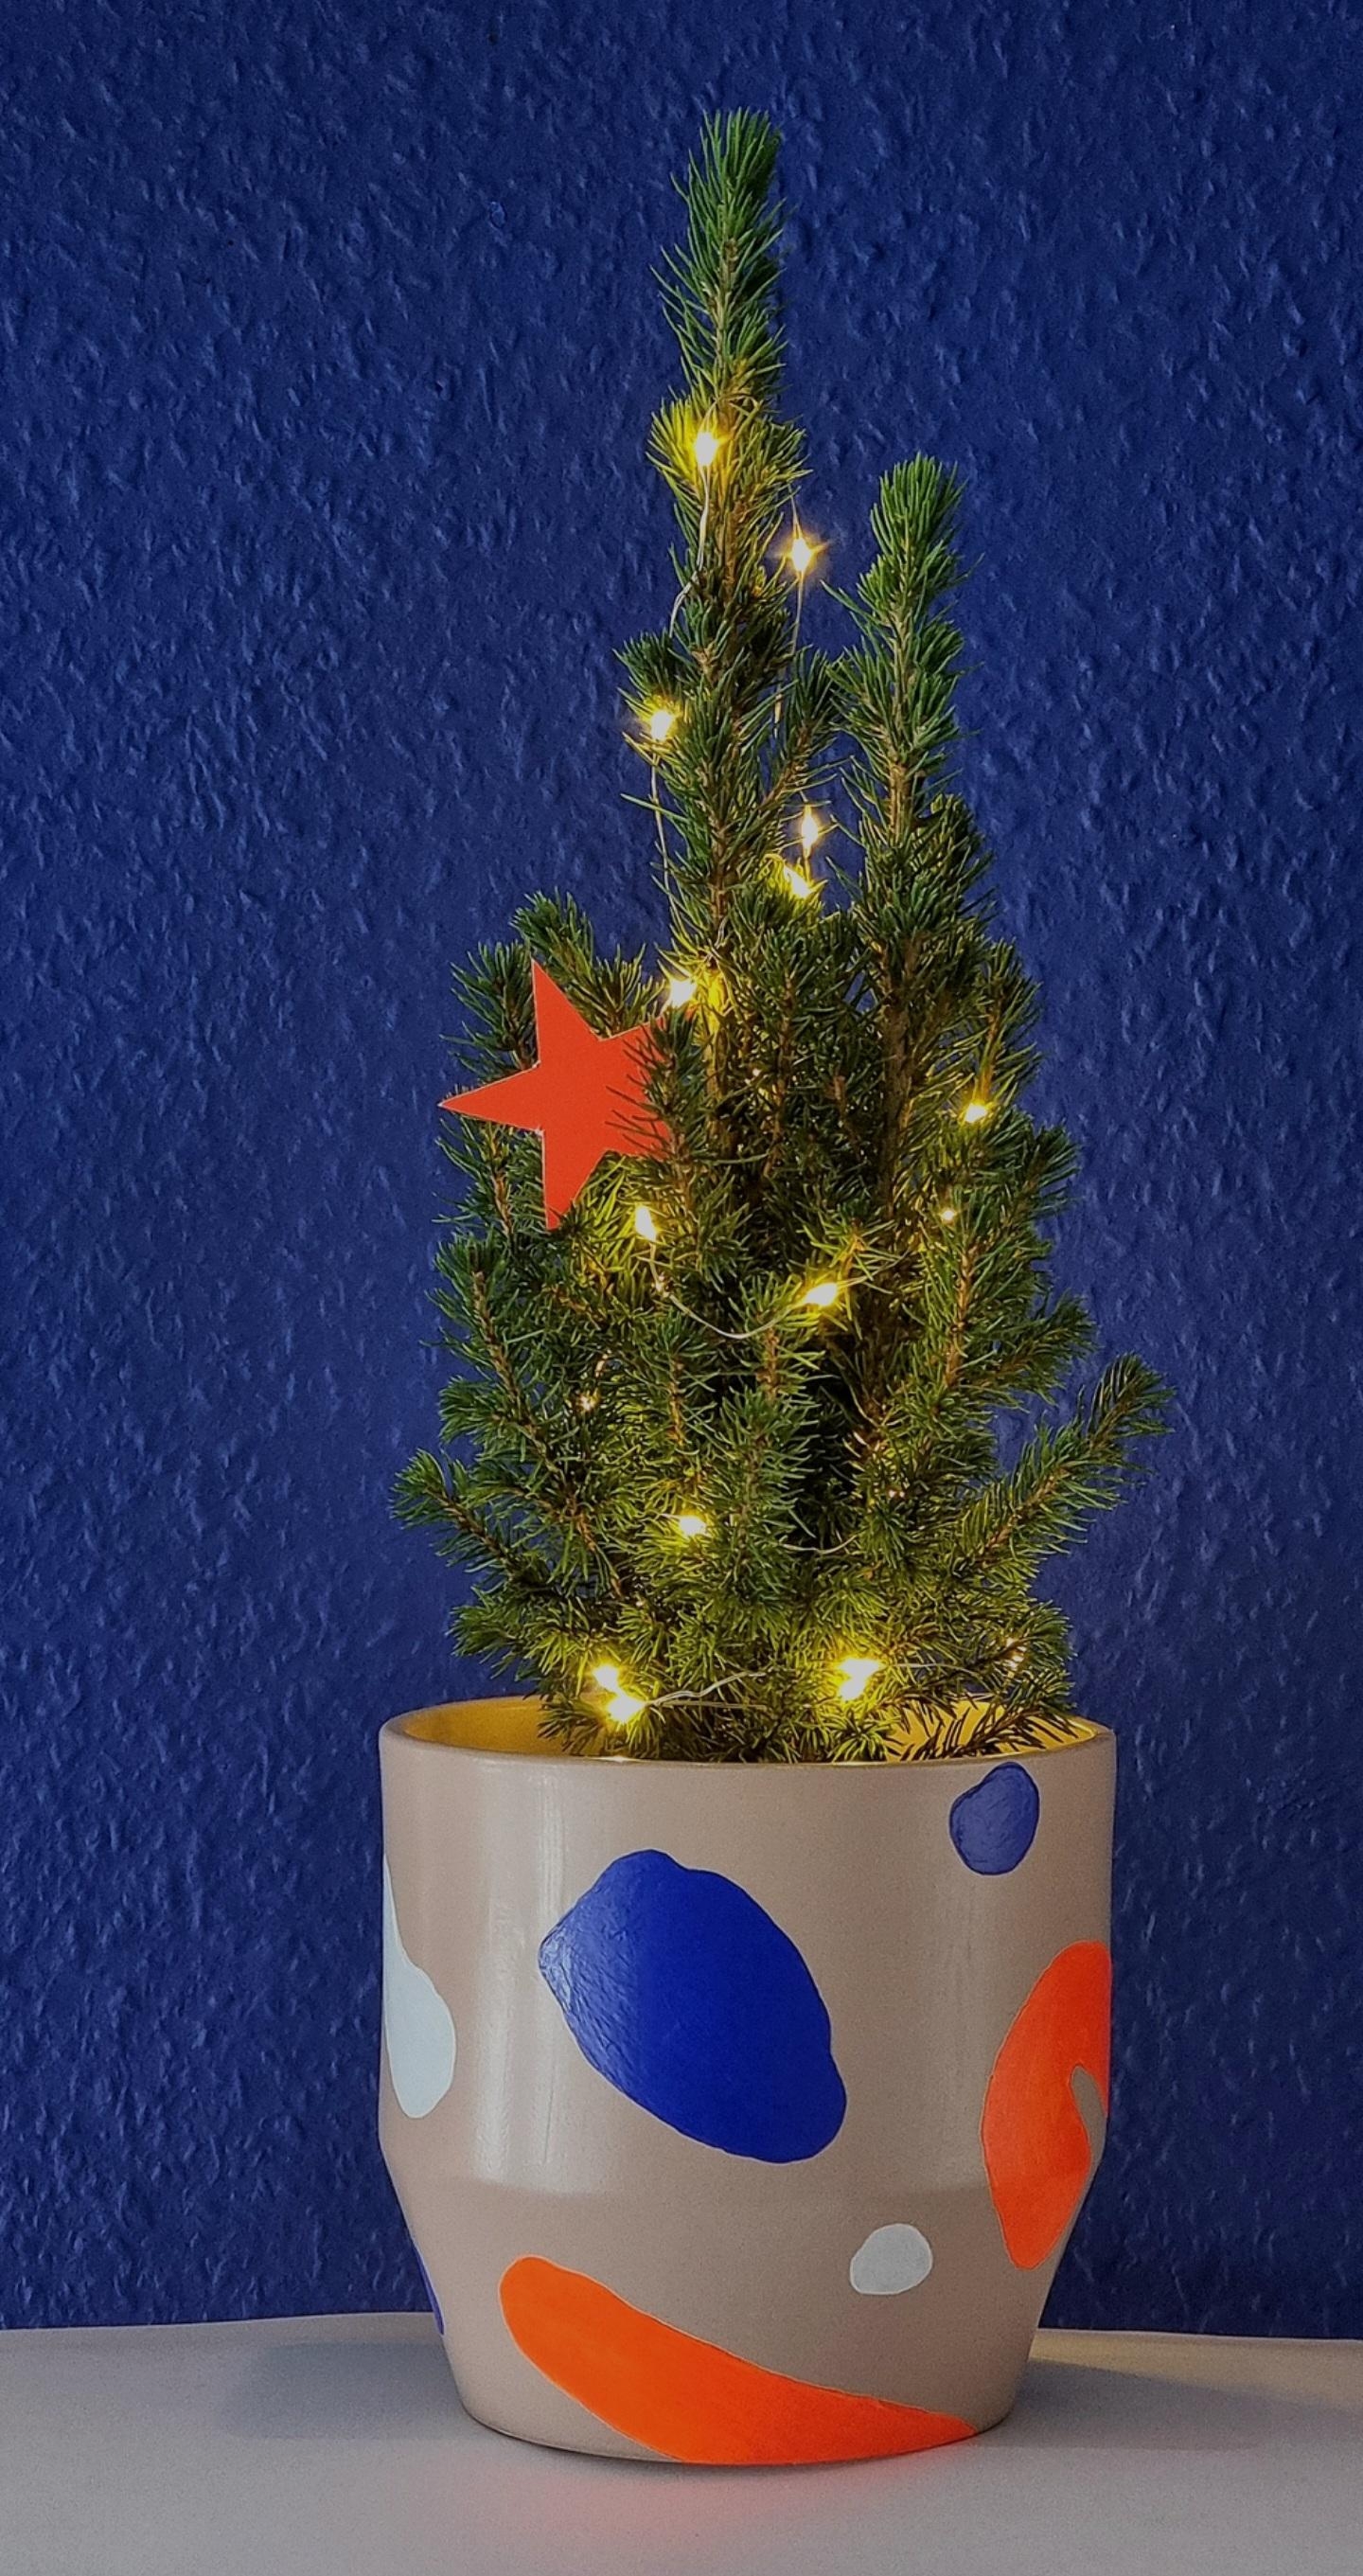 #Ätännschen oder auch #Attention ..In 3 Tagen ist es soweit 🌟.. #Lastminute #Diy #Geschenkidee zu #Weihnachten #Blumentopf mit #Acrylfarbe bemalt 💙🧡🤍 #Weihnachtsbaum